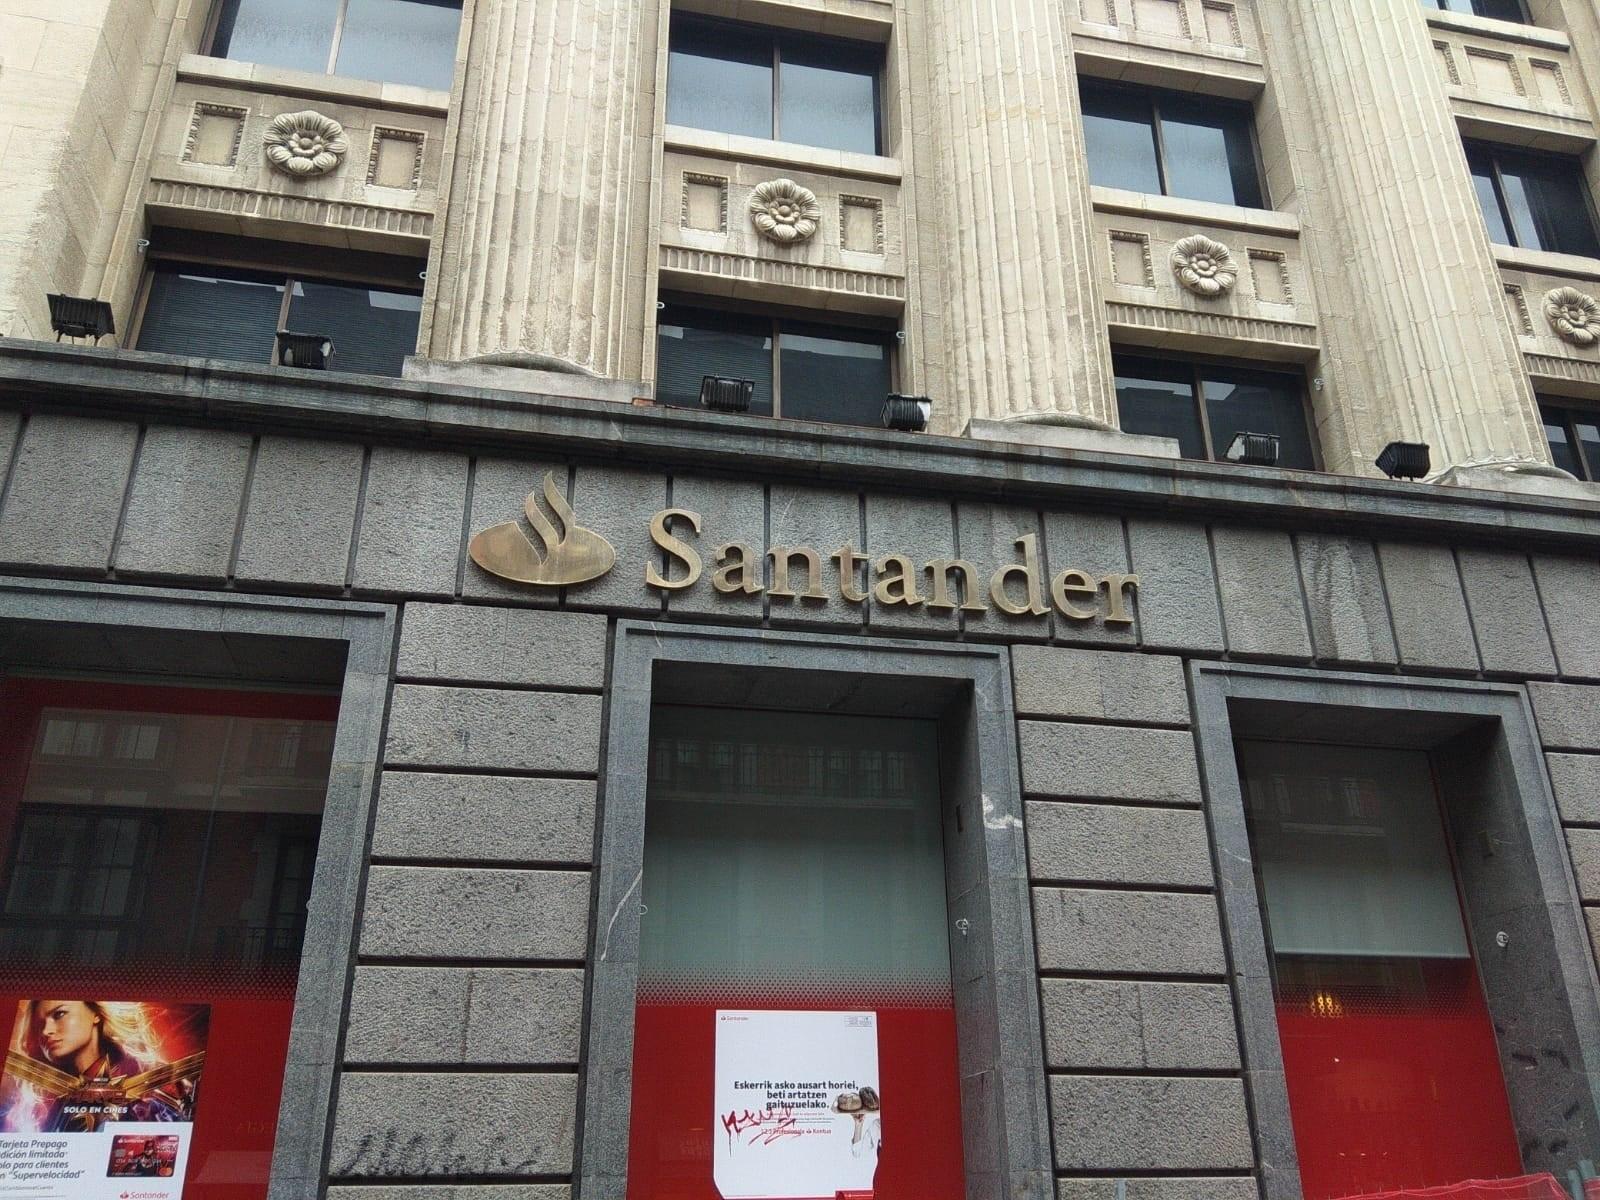 Oficina de Banco Santander en Bilbao